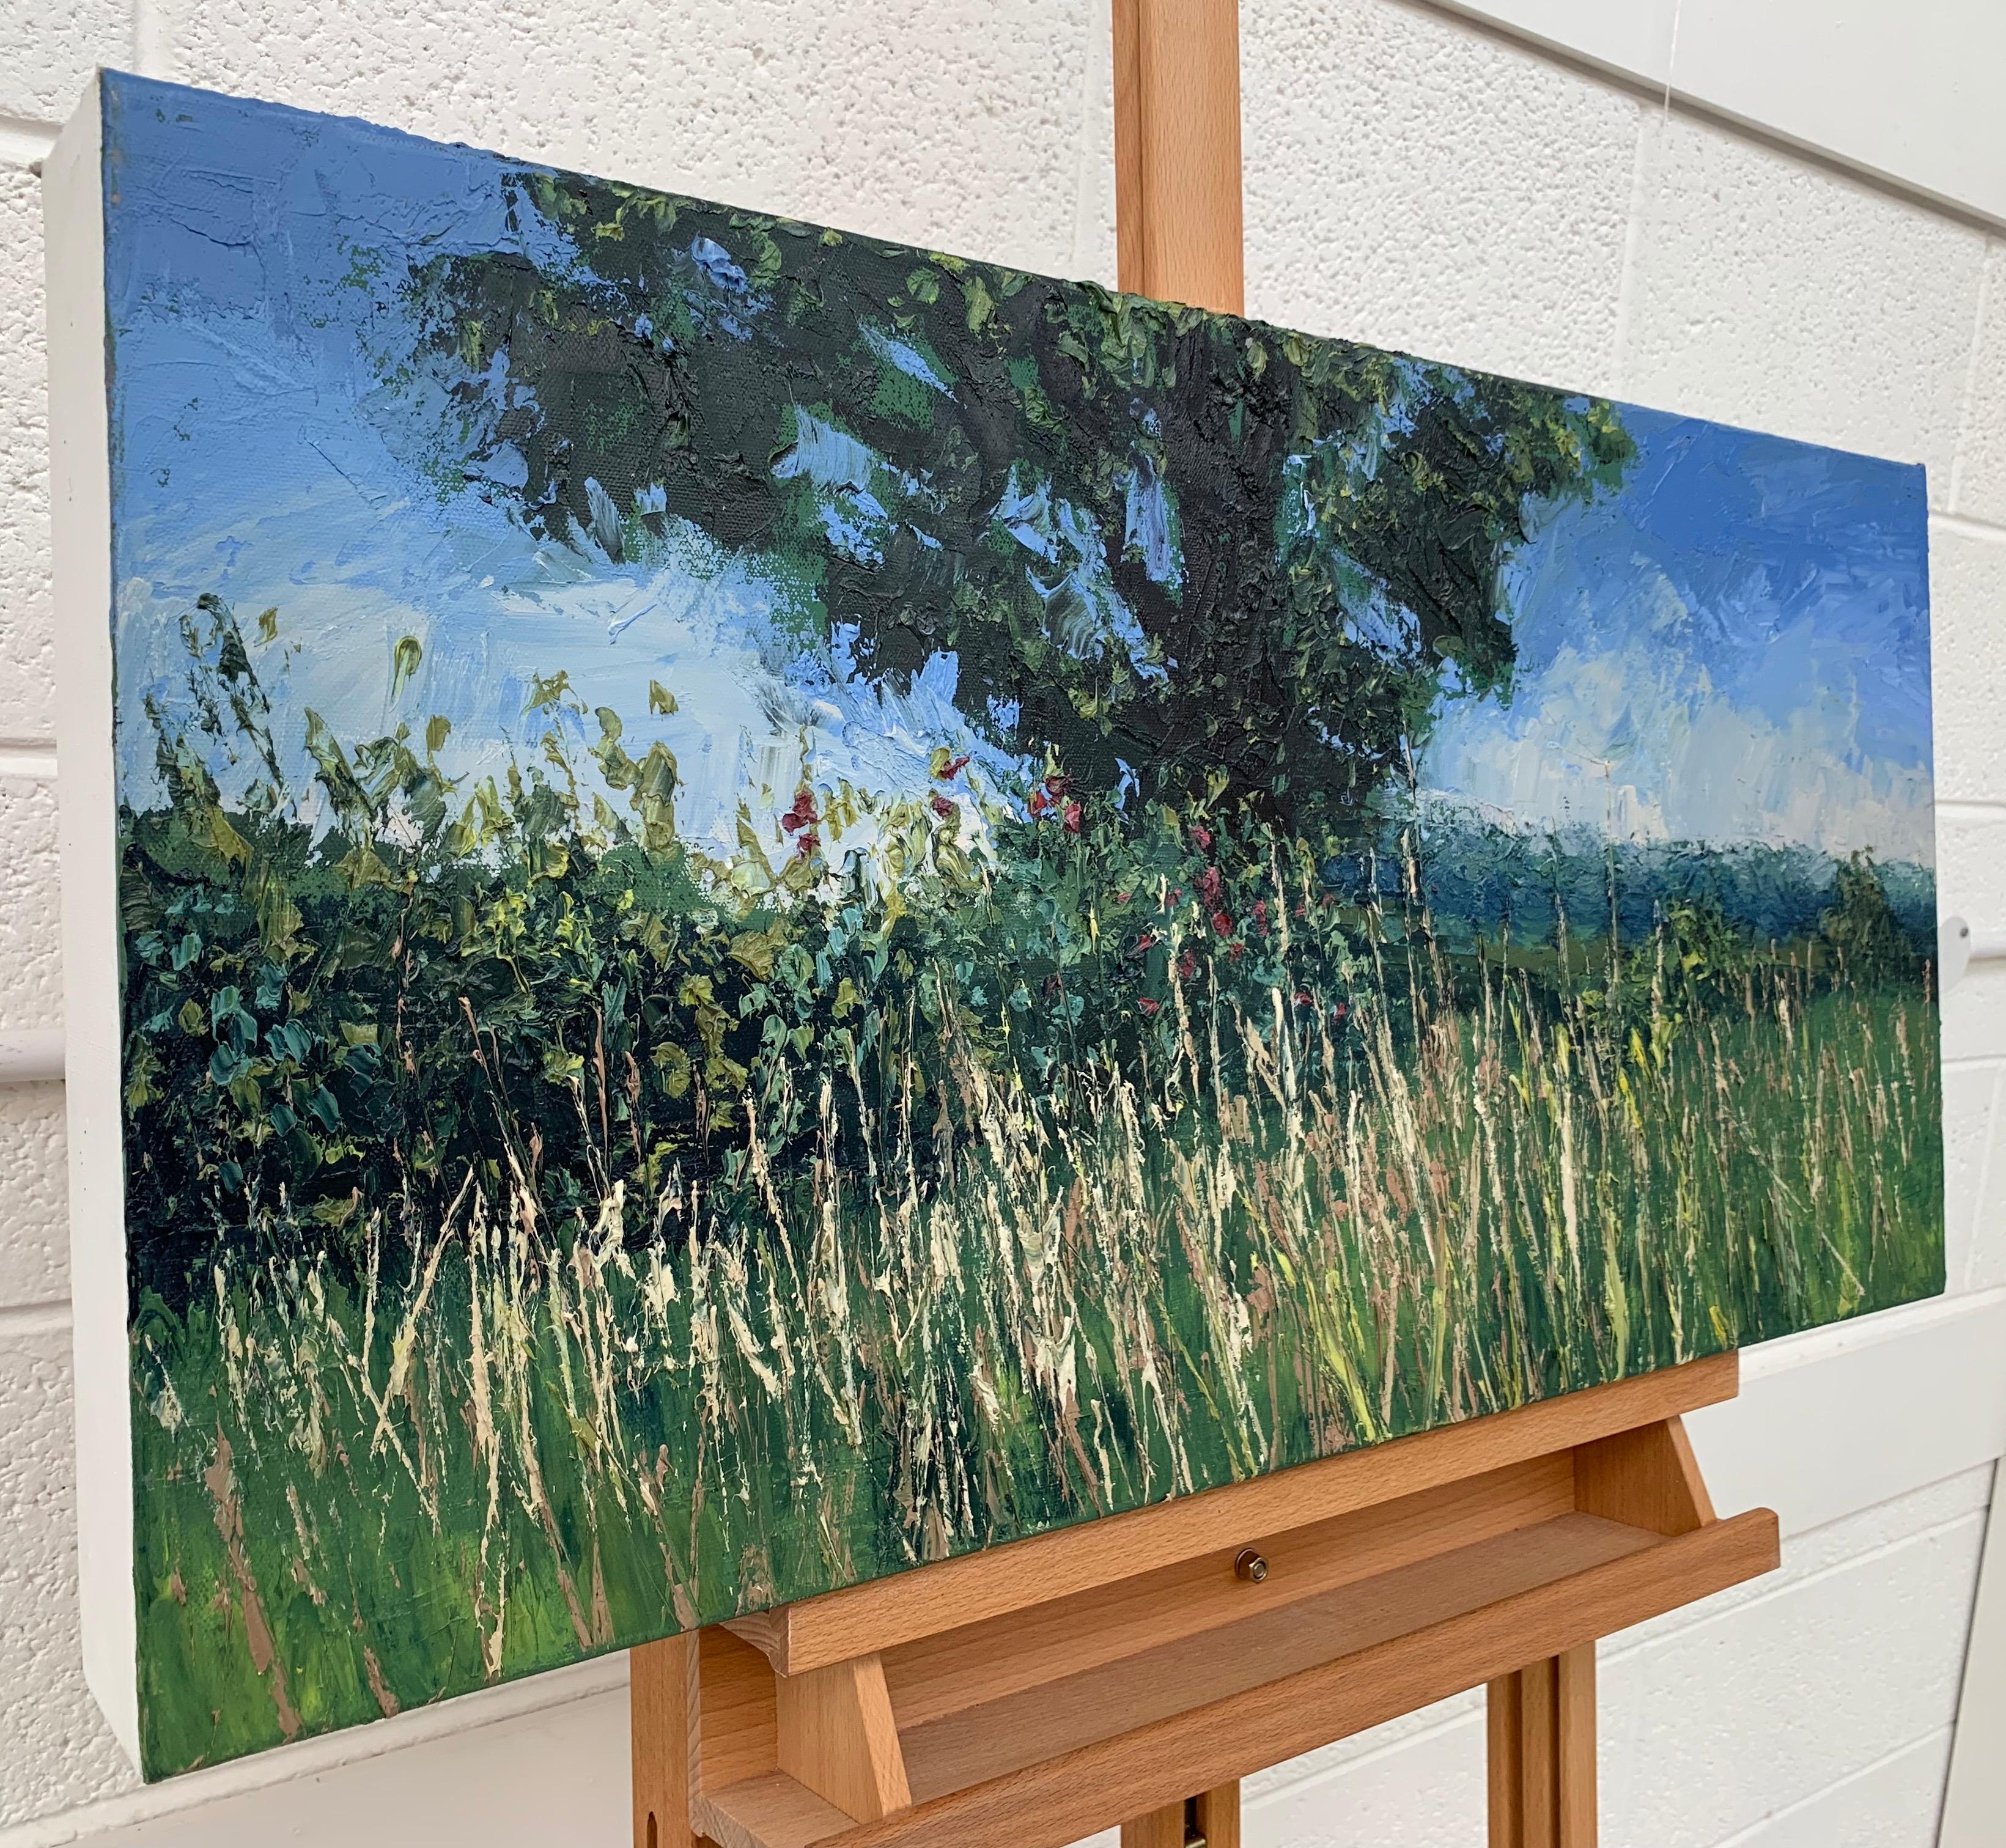 Sommer-Meadow-Landschaft Impasto-Ölgemälde mit Baum, Impasto-Gemälde des britischen Künstlers (Grau), Figurative Painting, von Colin Halliday